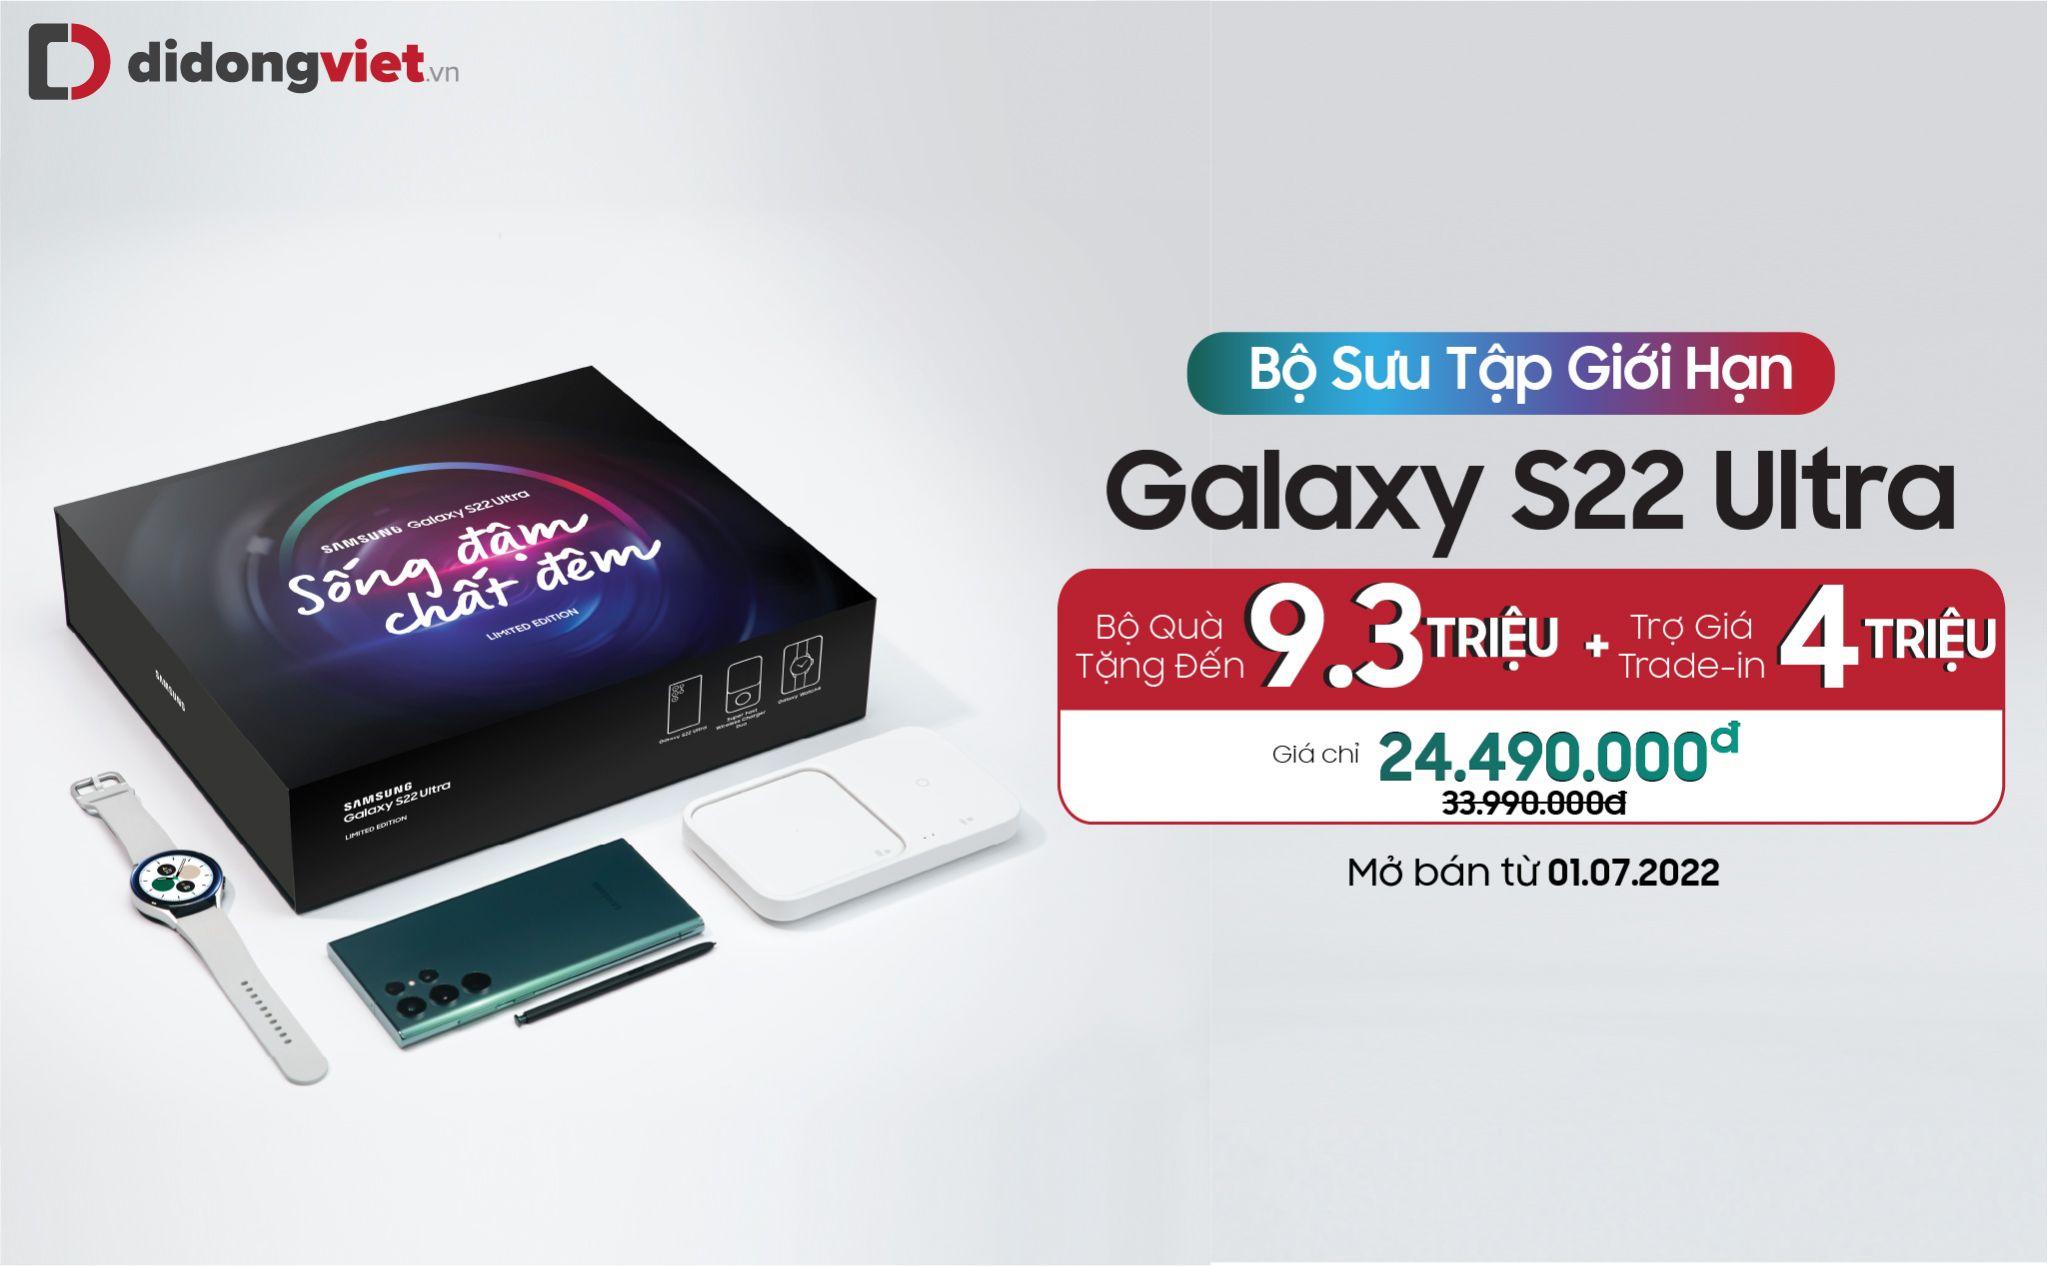 Galaxy S22 Ultra trở lại với phiên bản màu Xanh Zeta giới hạn, đặt trước tặng kèm bộ quà trị giá lên đến 13 triệu đồng